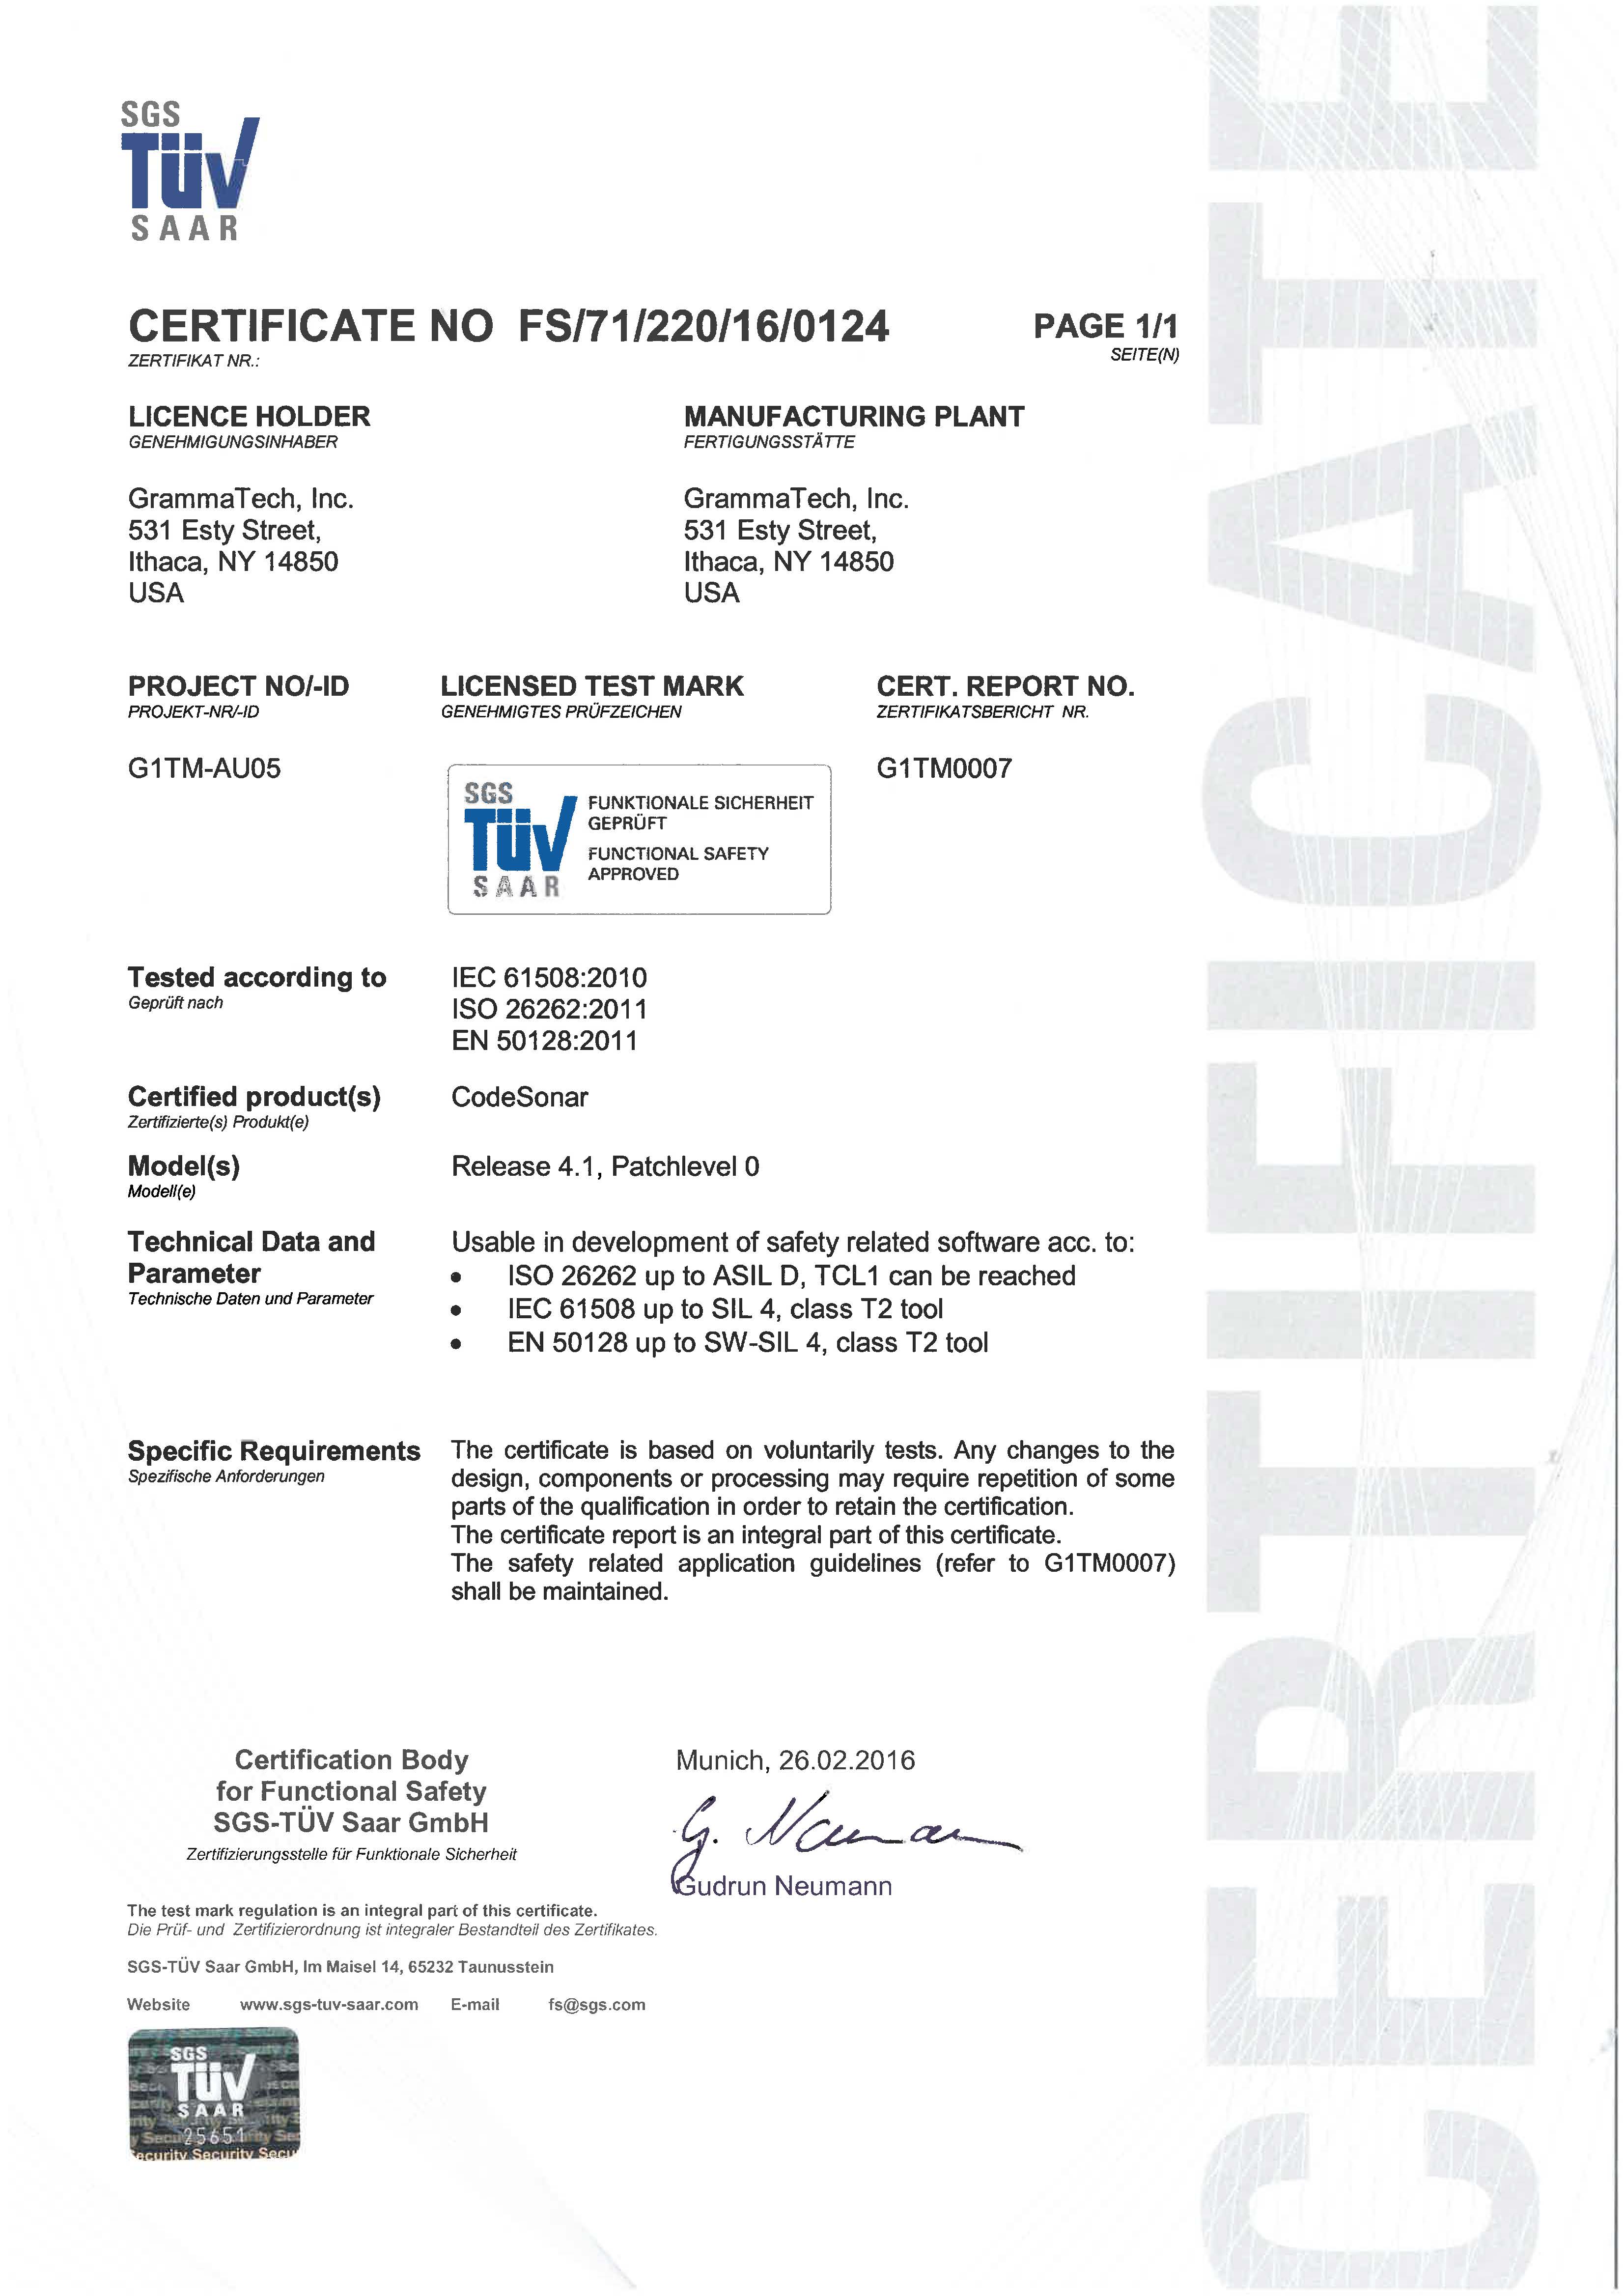 sgs-tuv-codesonar-certificate-4-1.jpg